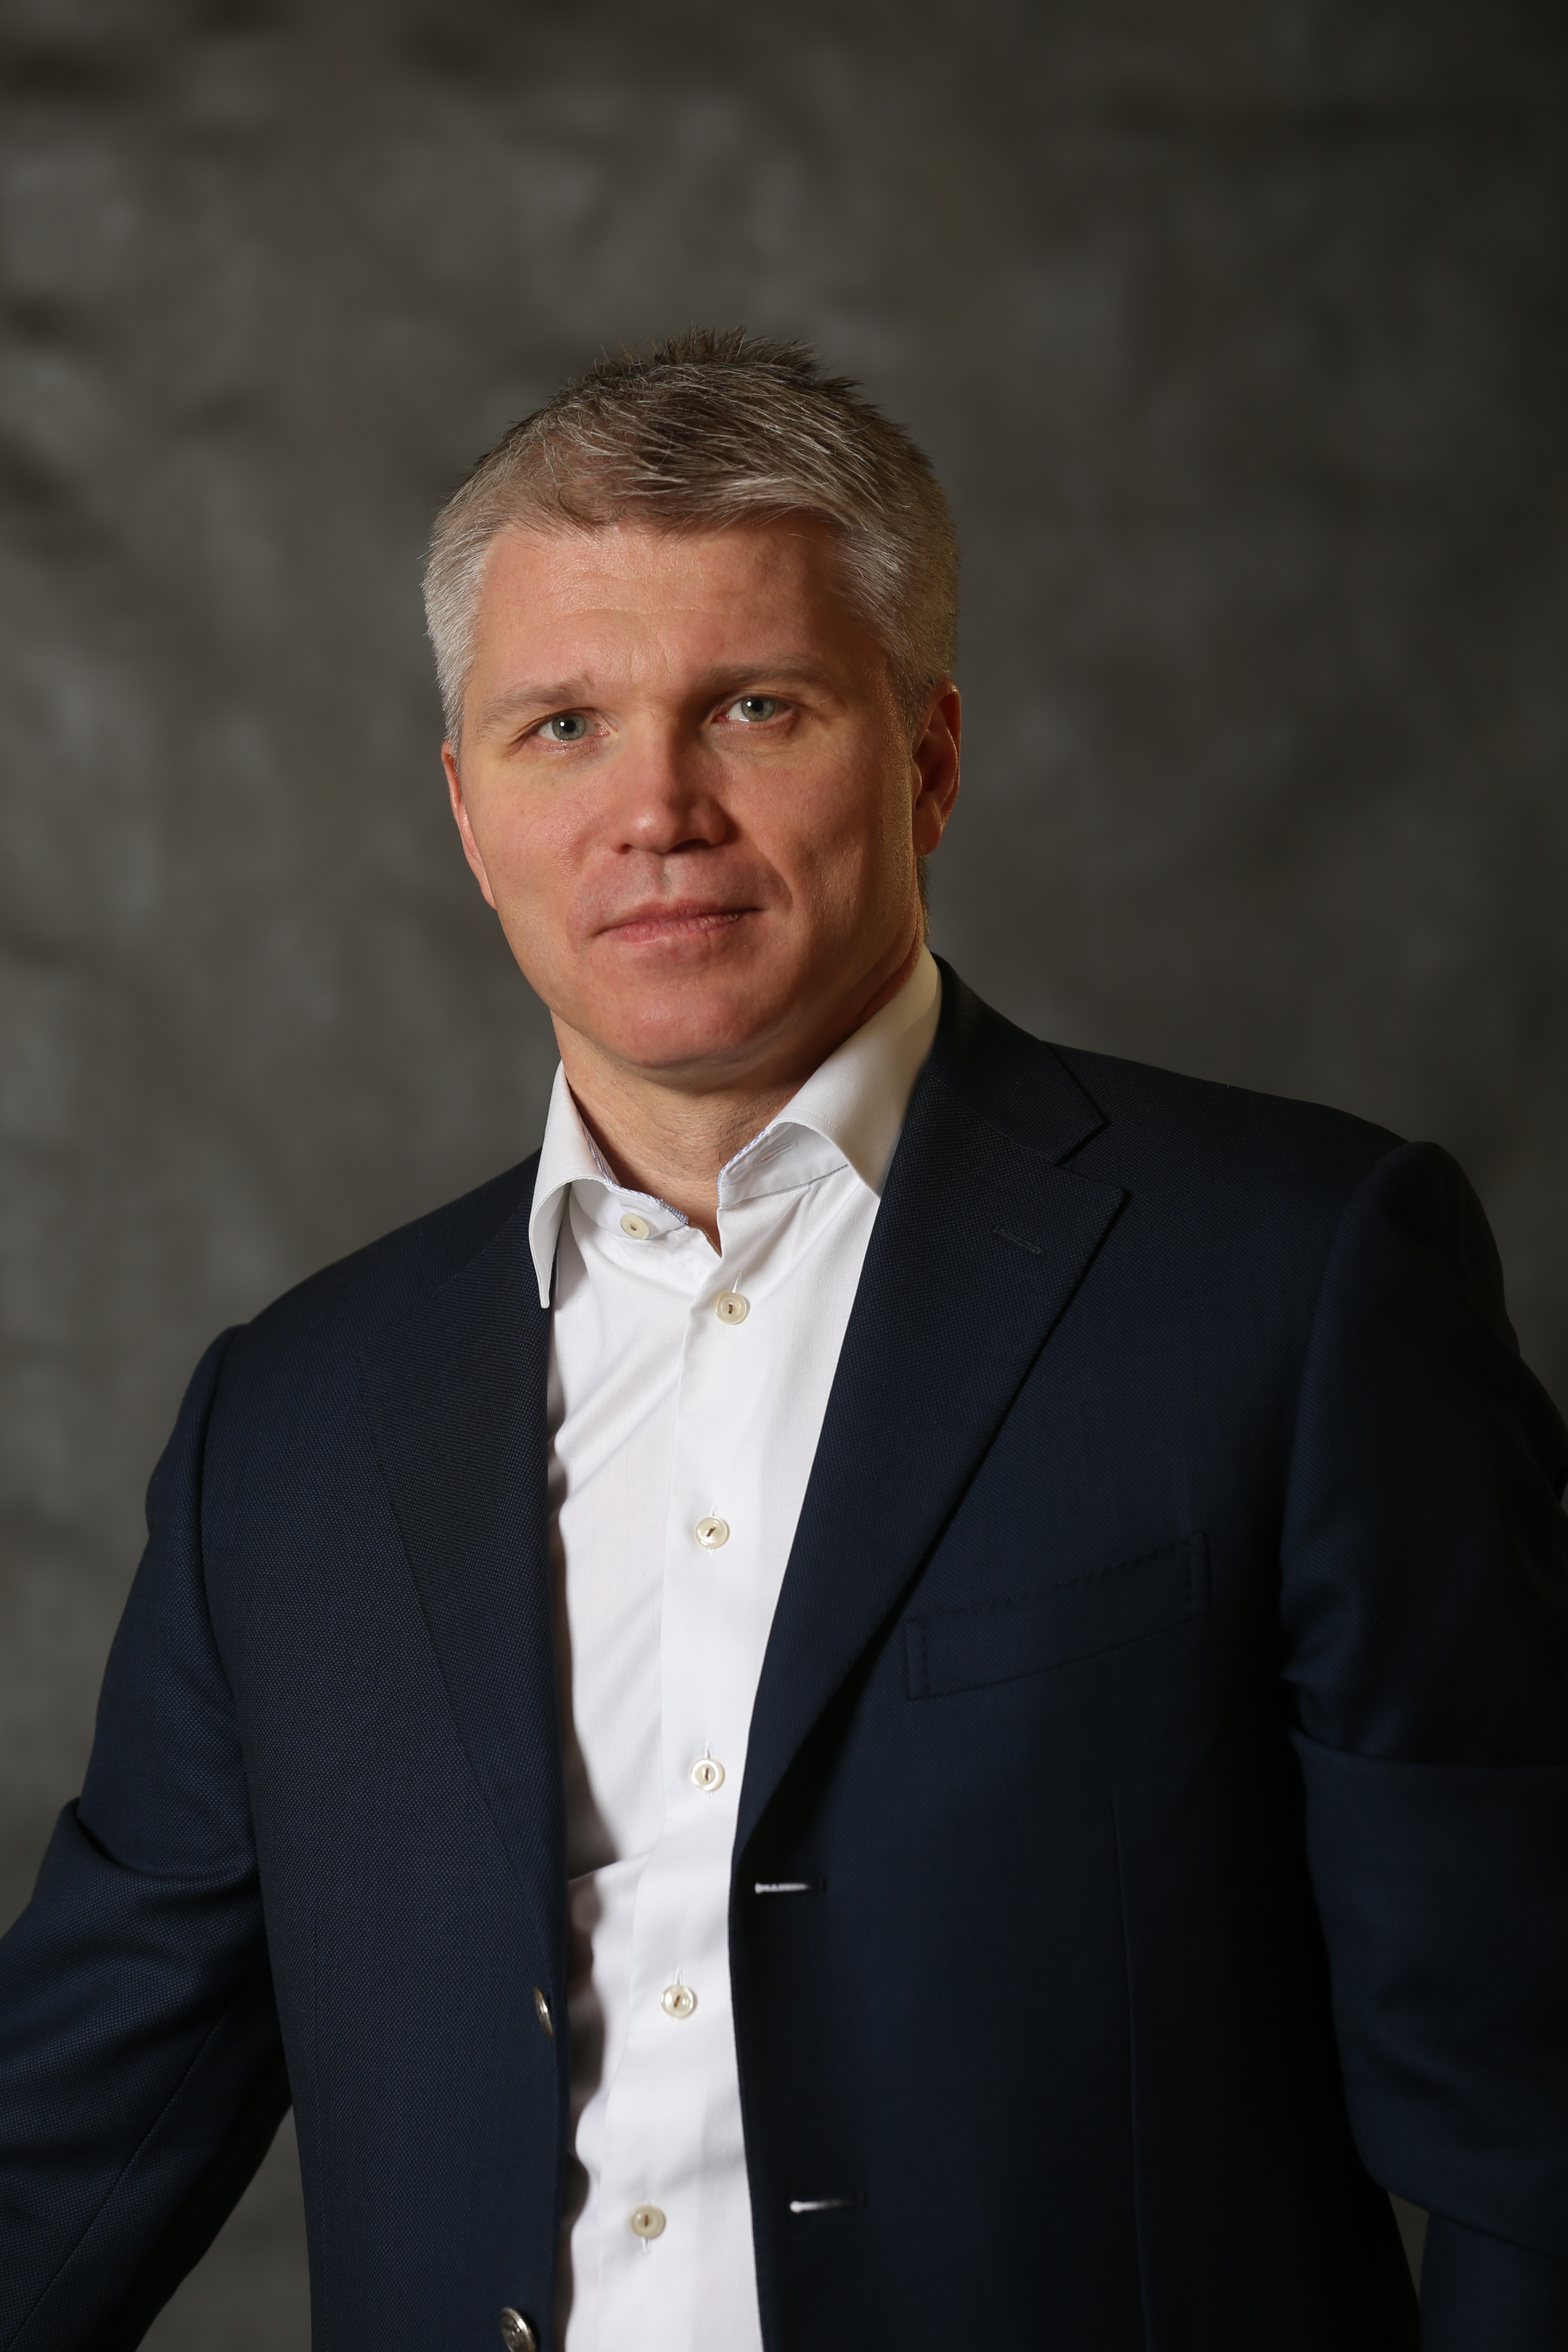 Павел Колобков, Министр спорта РФ, приглашает экспертов на ТБ Форум 2018